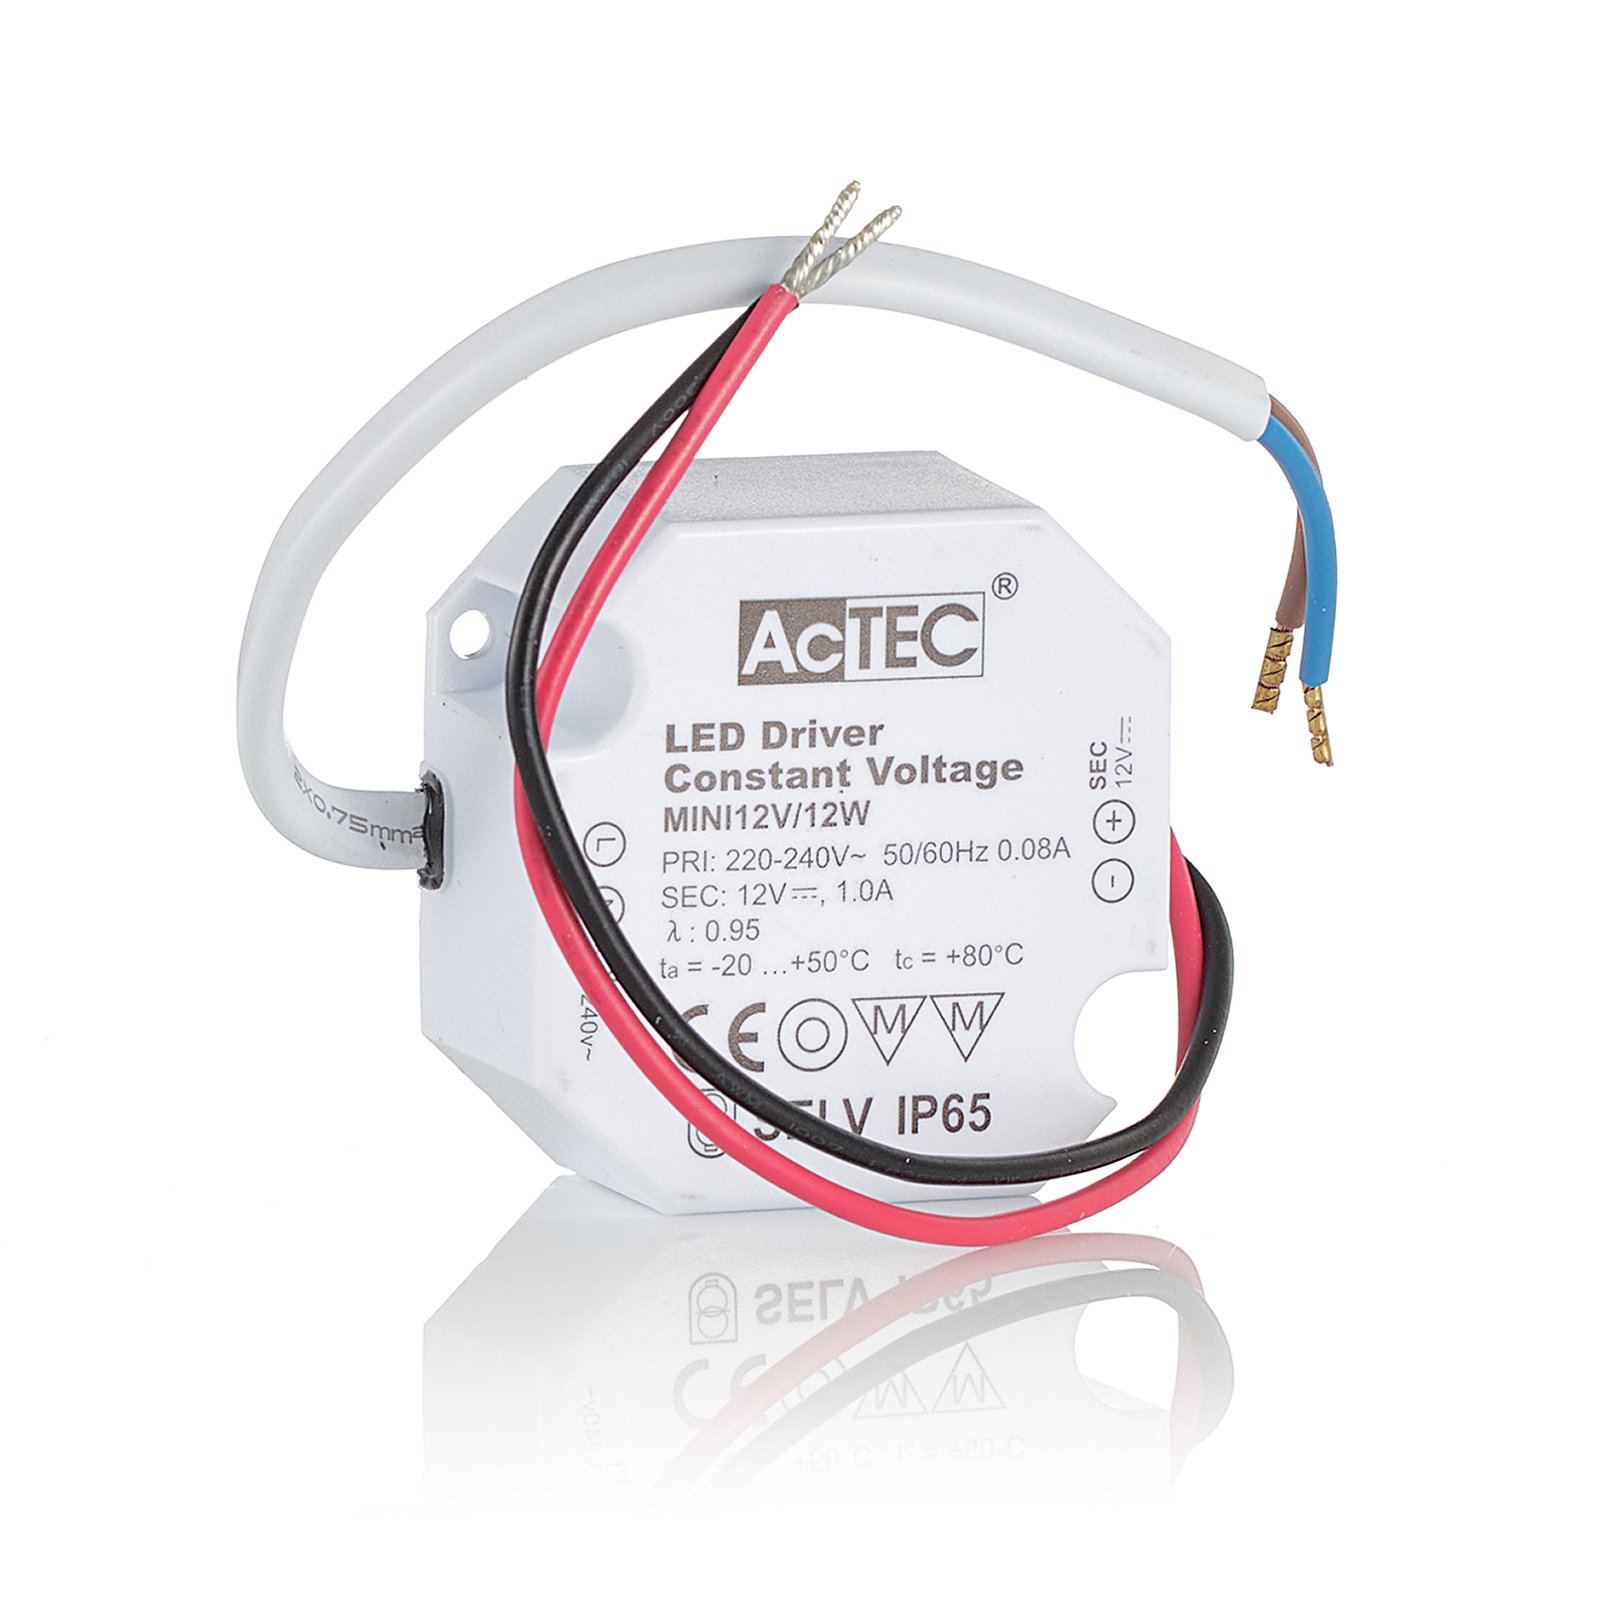 AcTEC Mini driver LED CV 12 V, 12W, IP65